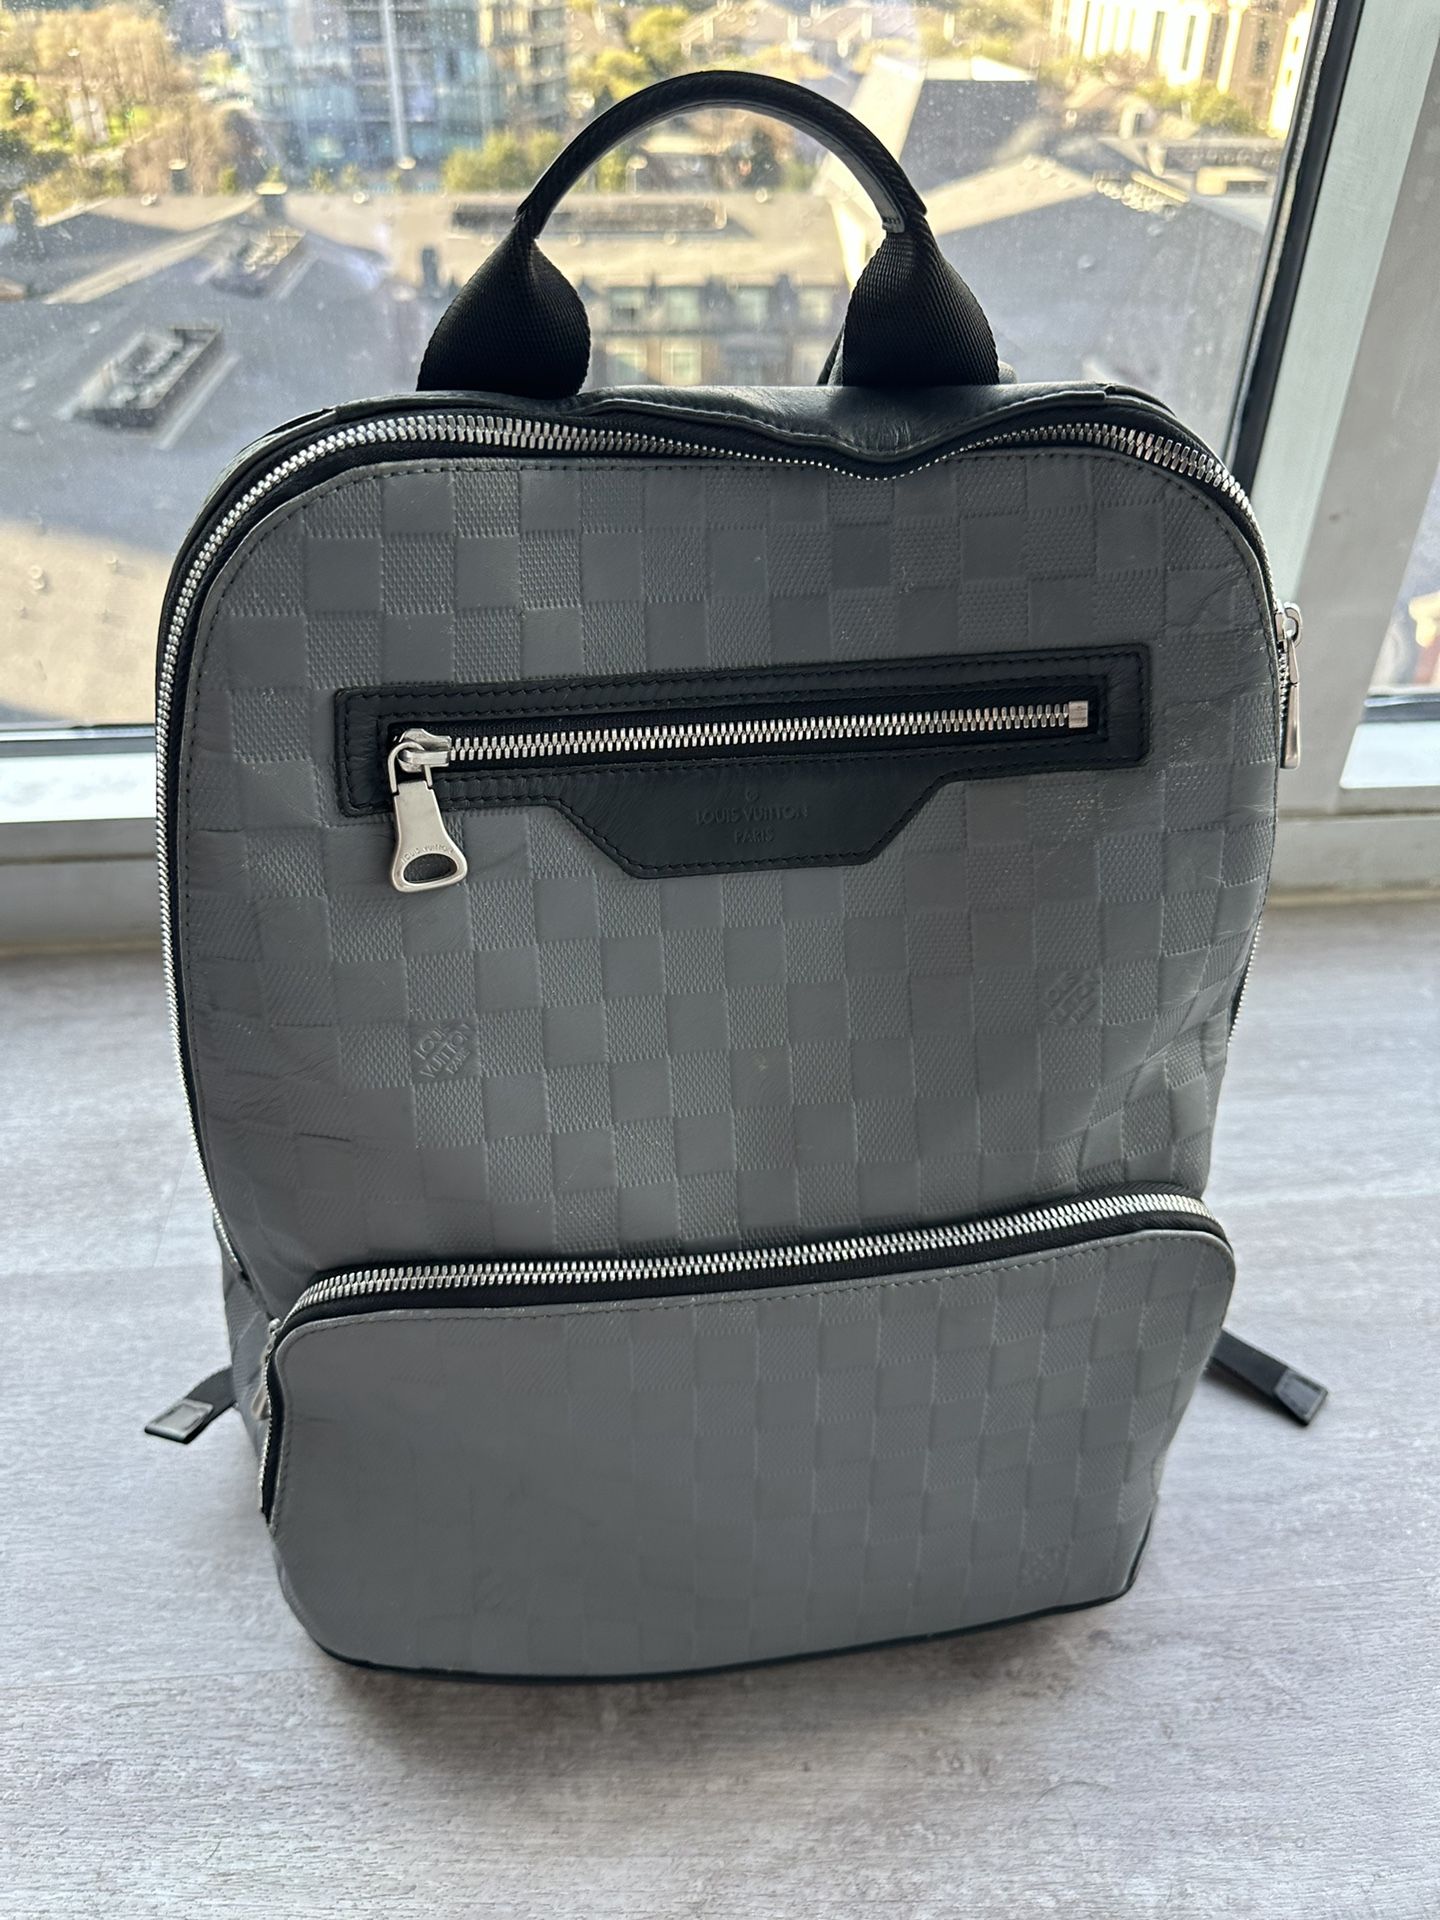 100% Authentic Men’s Louis Vuitton Backpack 